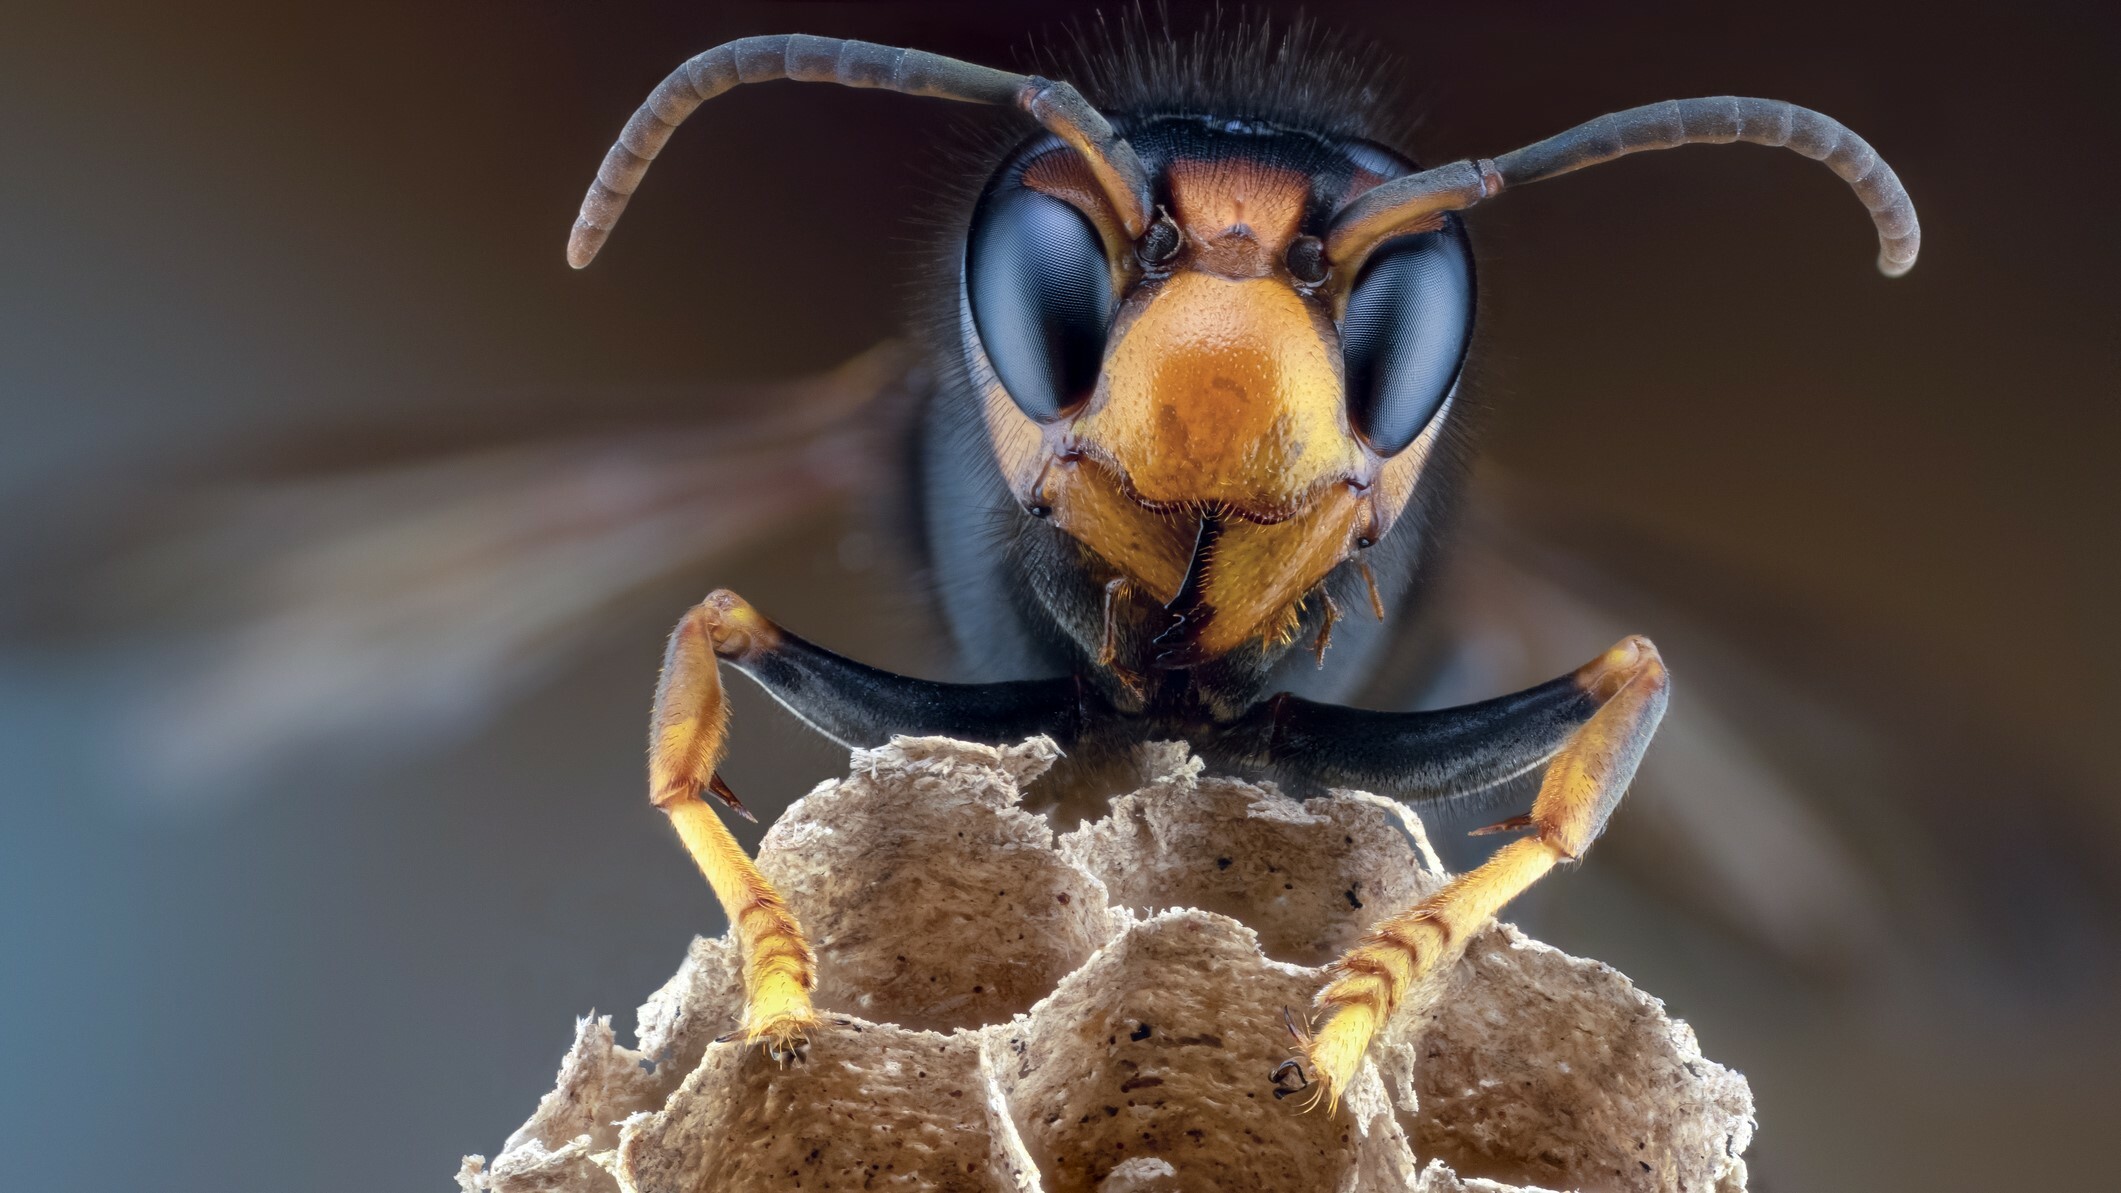 Le api strillano angosciate quando attaccate dai calabroni, lo studio